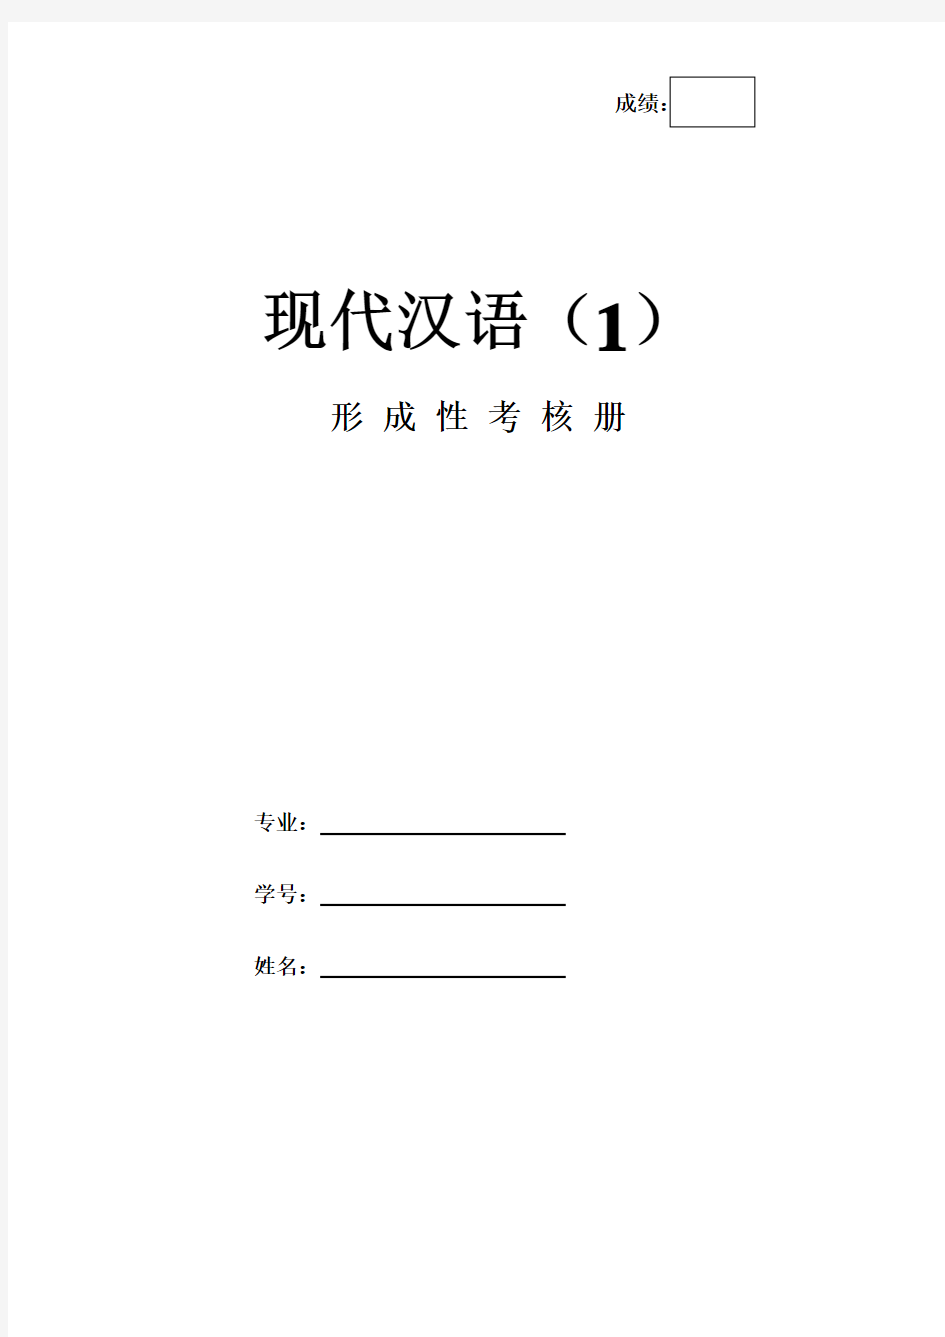 《现代汉语1》作业形考网考形成性考核册-国家开放大学电大